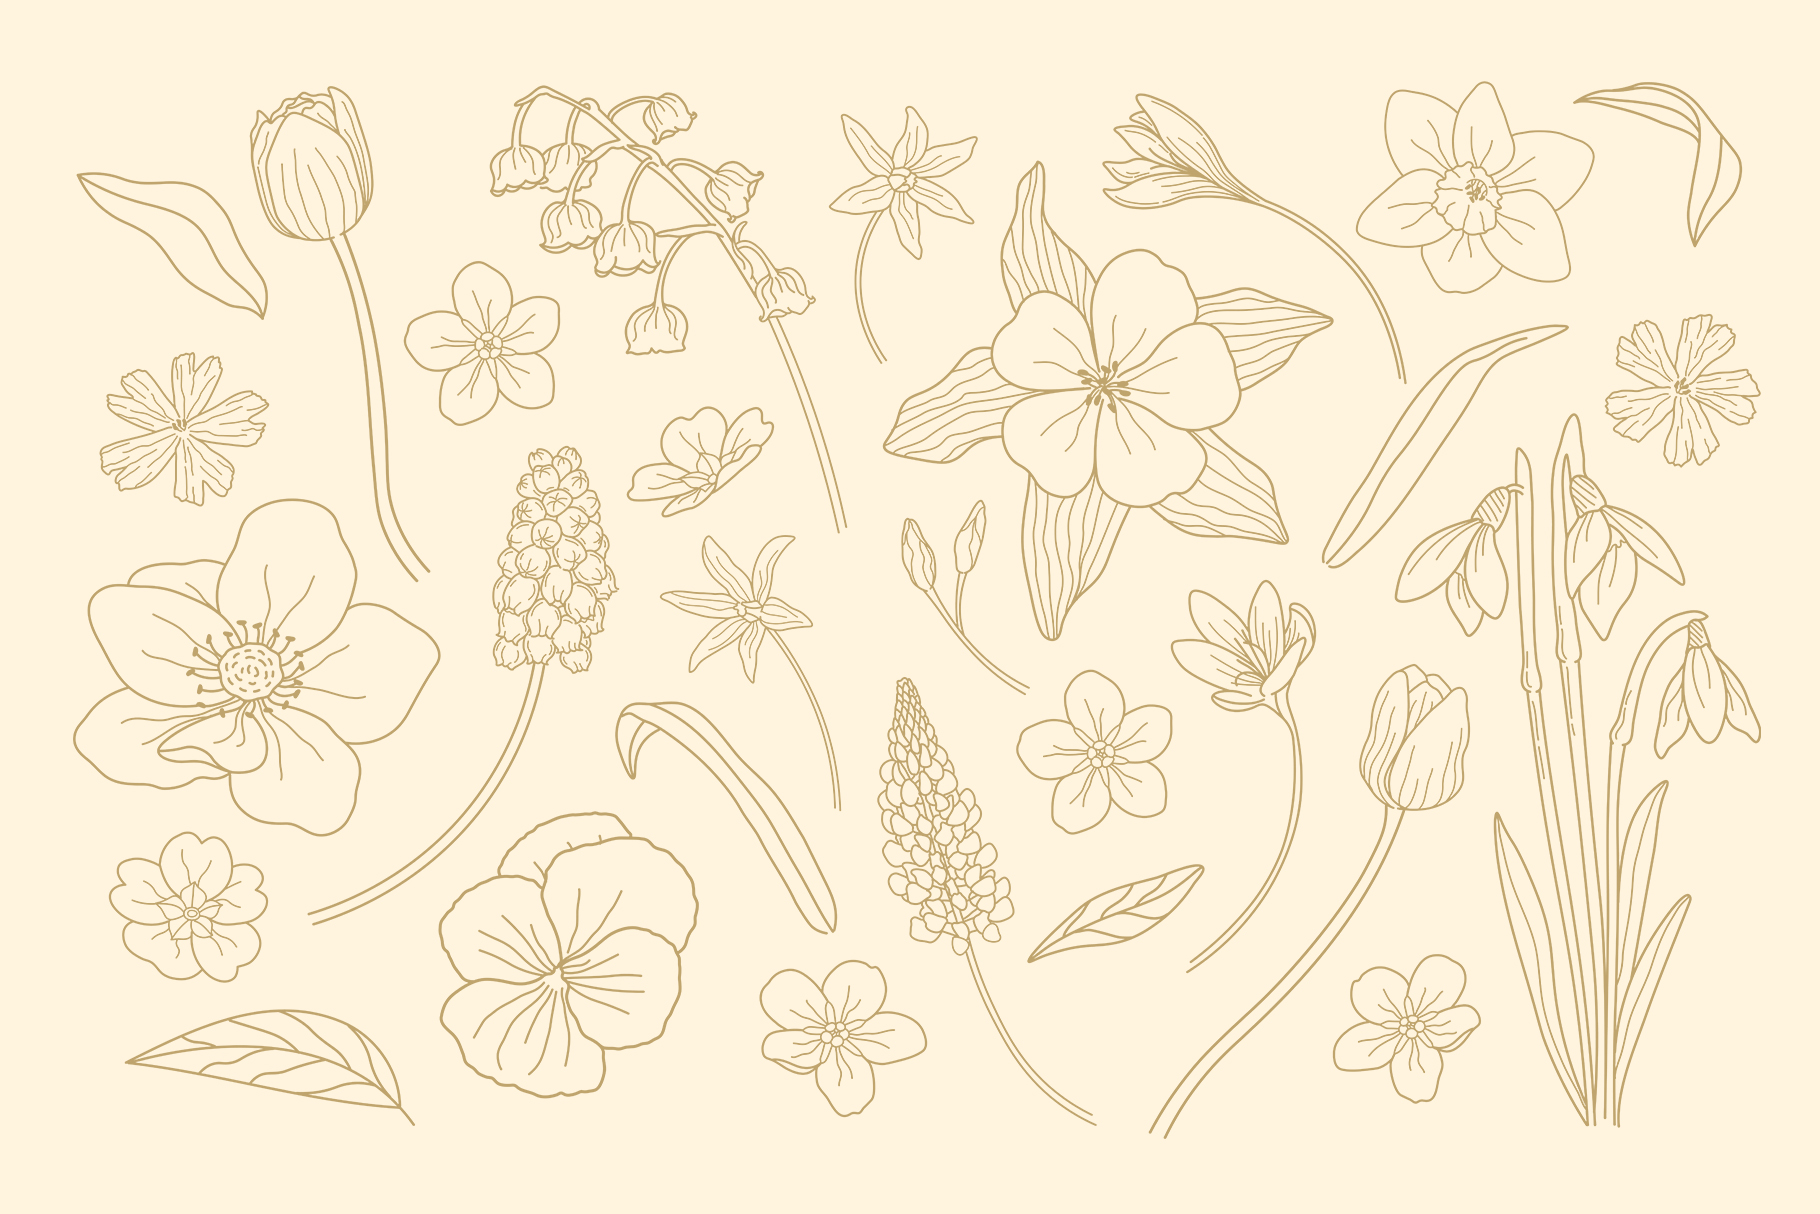 Spring Flower Illustration (AI, EPS, PNG Format)